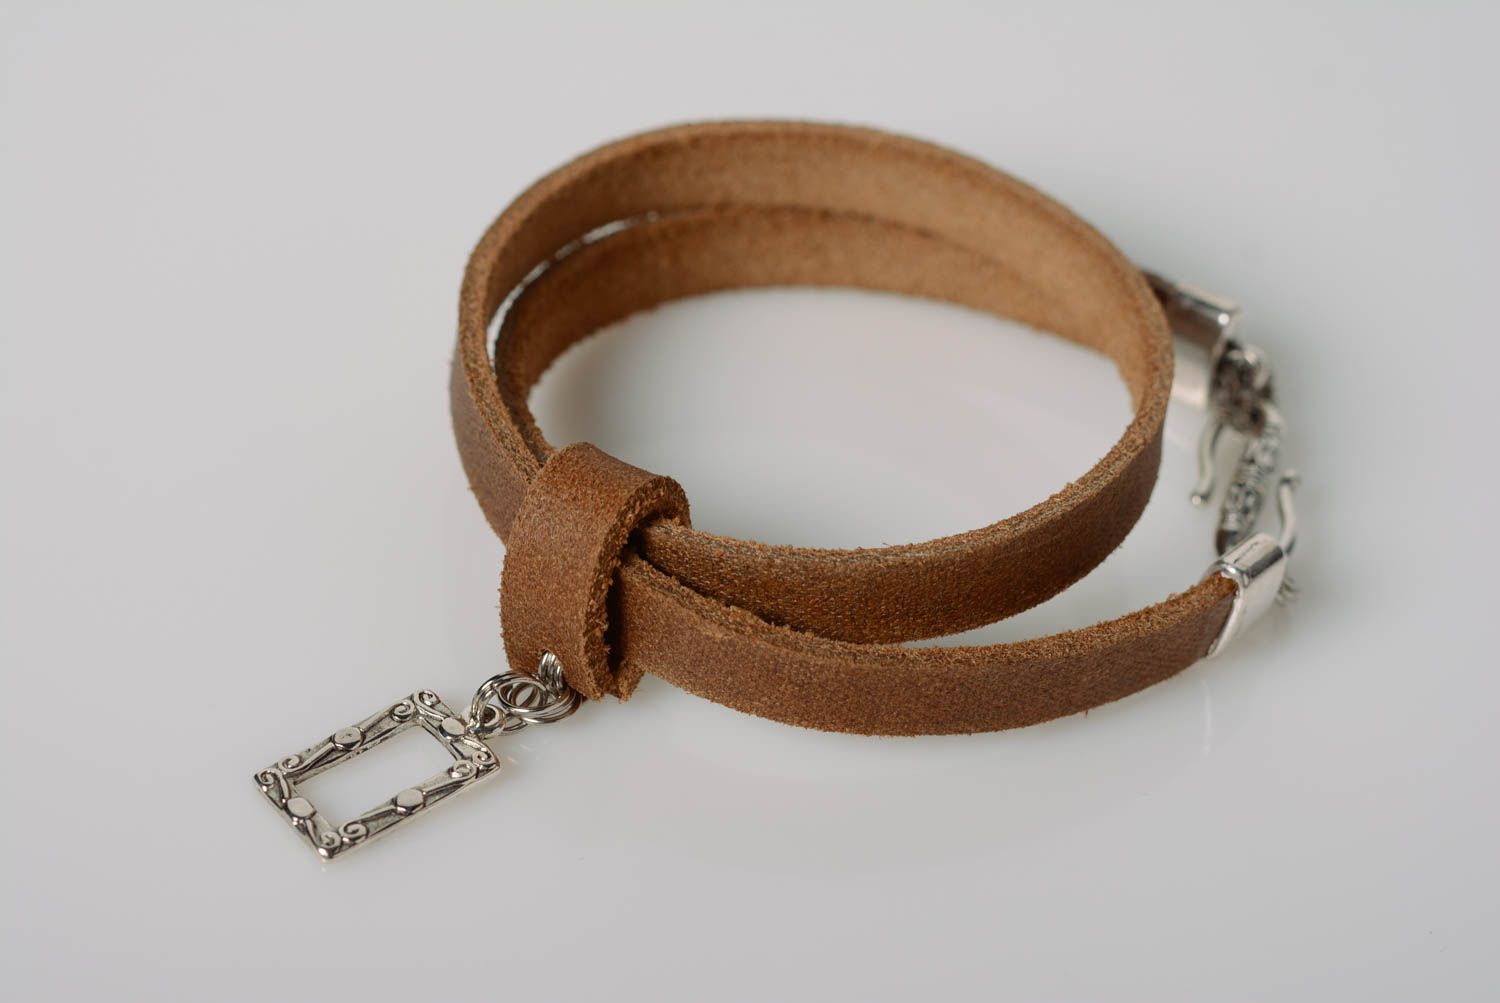 Bracelet fait main réalisé de cuir naturel marron avec pendeloque métallique photo 1